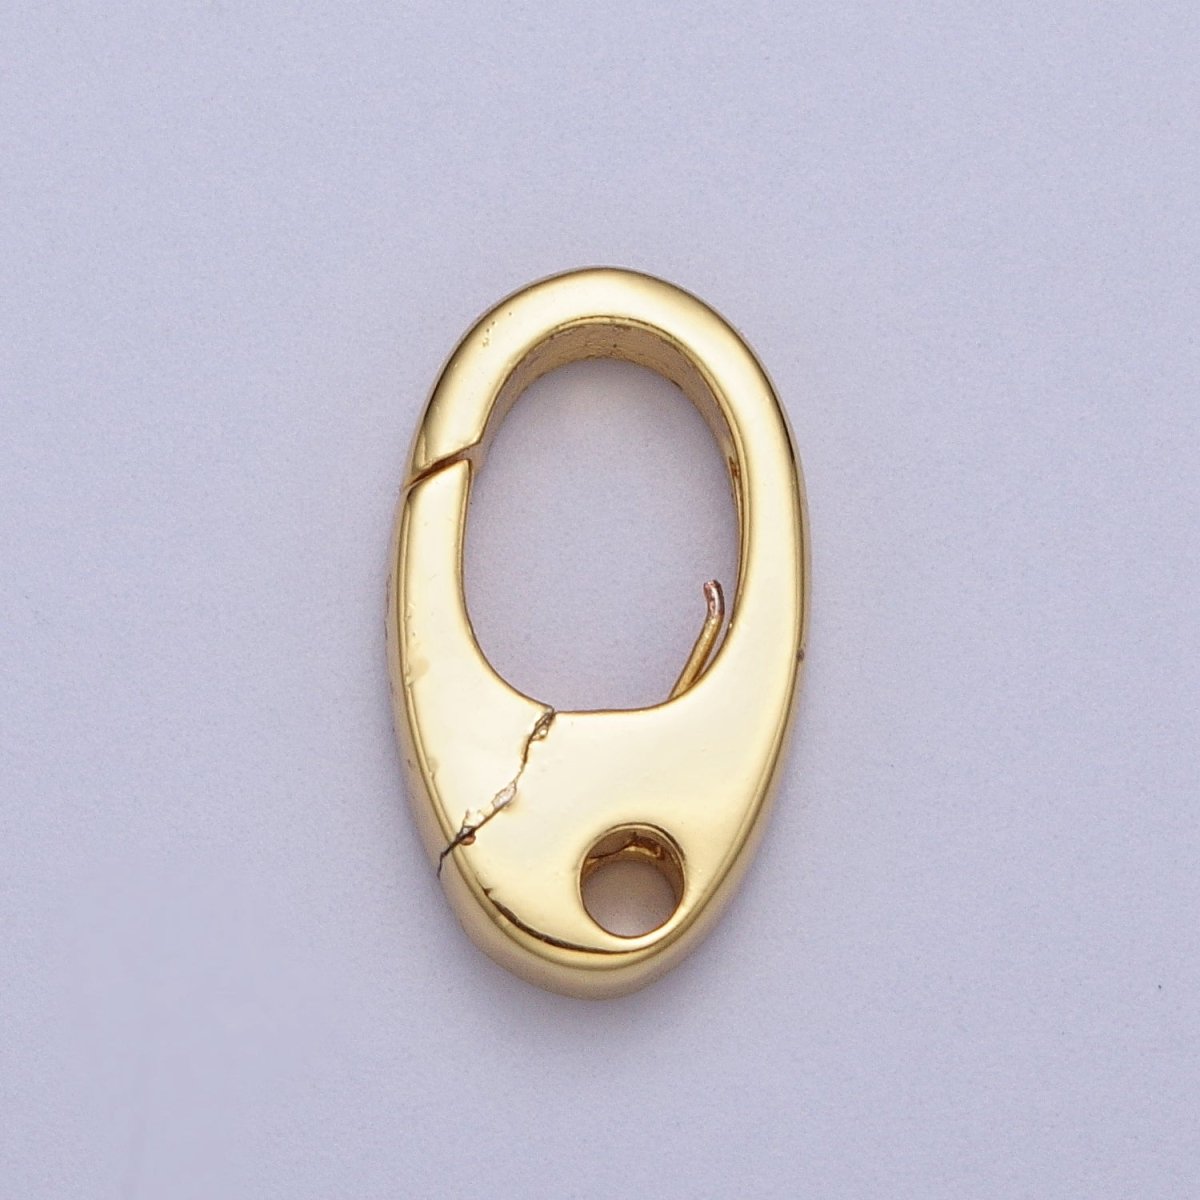 Gold Oval Push Clasps, Push Gate Clasp Silver Small Oval Clasp, Hinged Ring Clasp, Spring Gate Clasp for Bracelet Necklace Z-194 Z-195 - DLUXCA